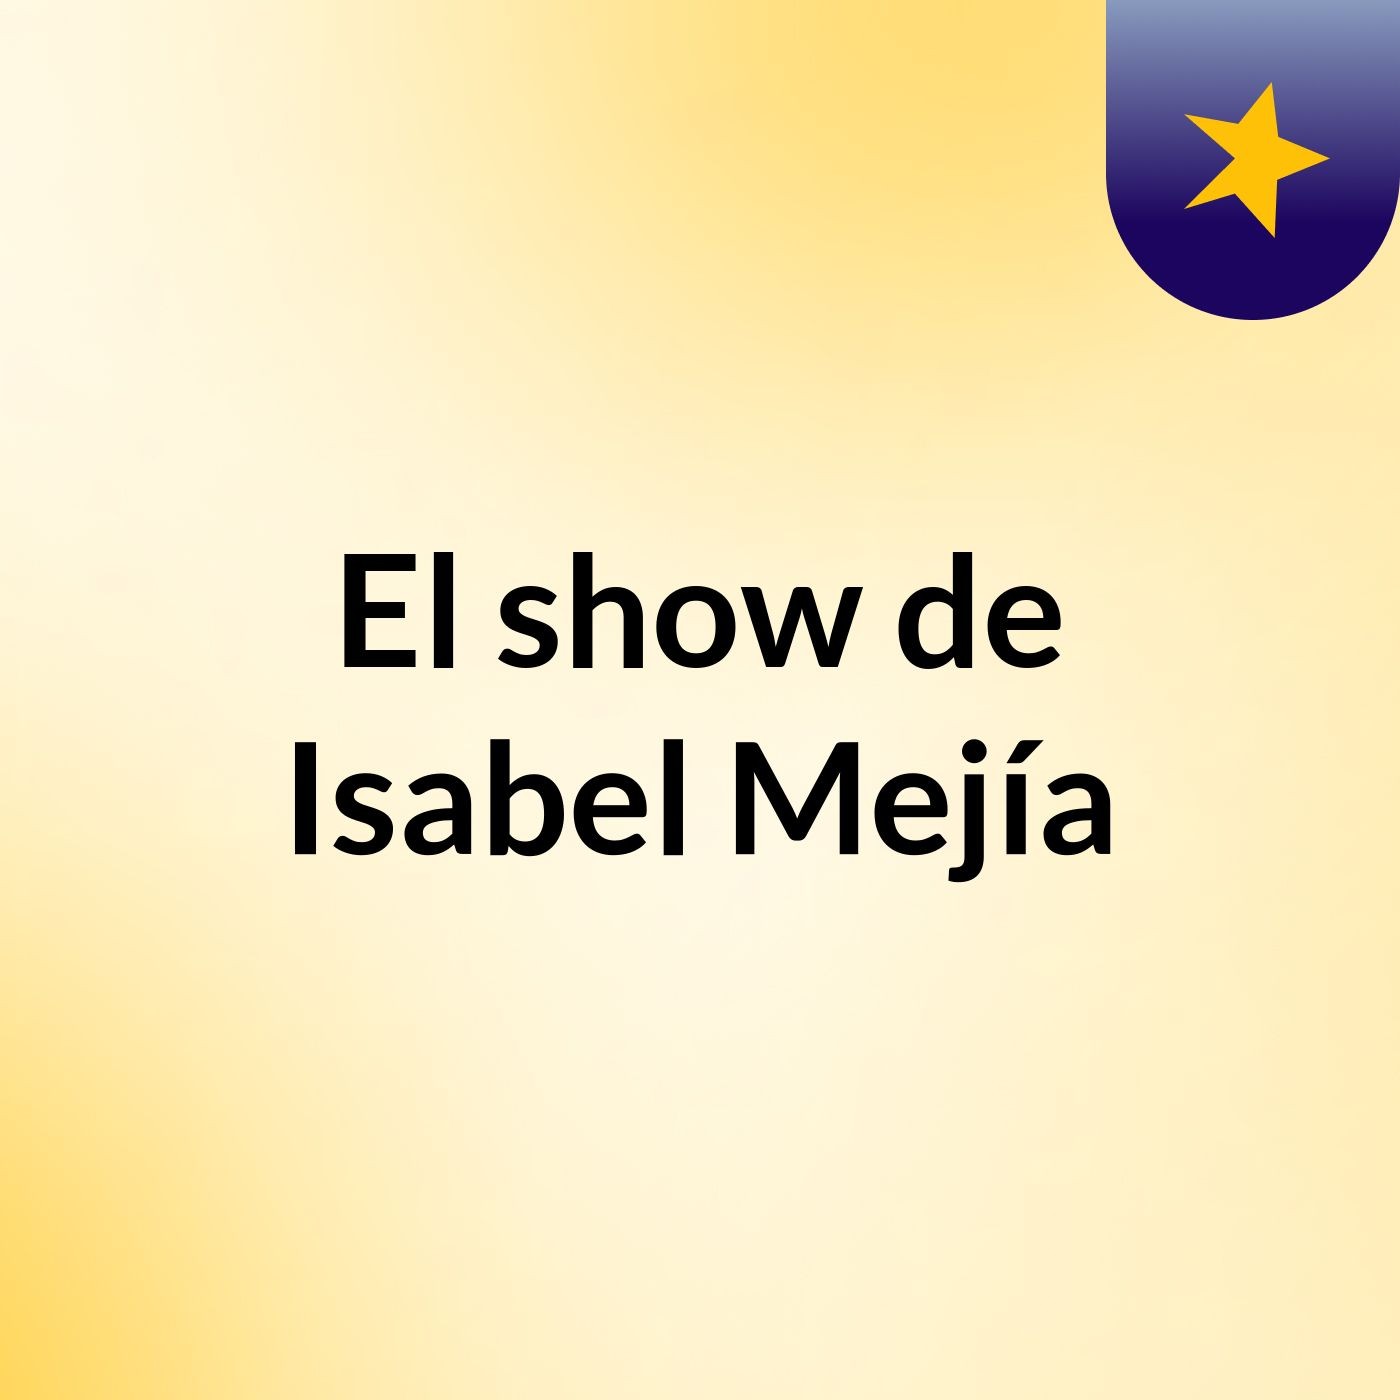 El show de Isabel Mejía